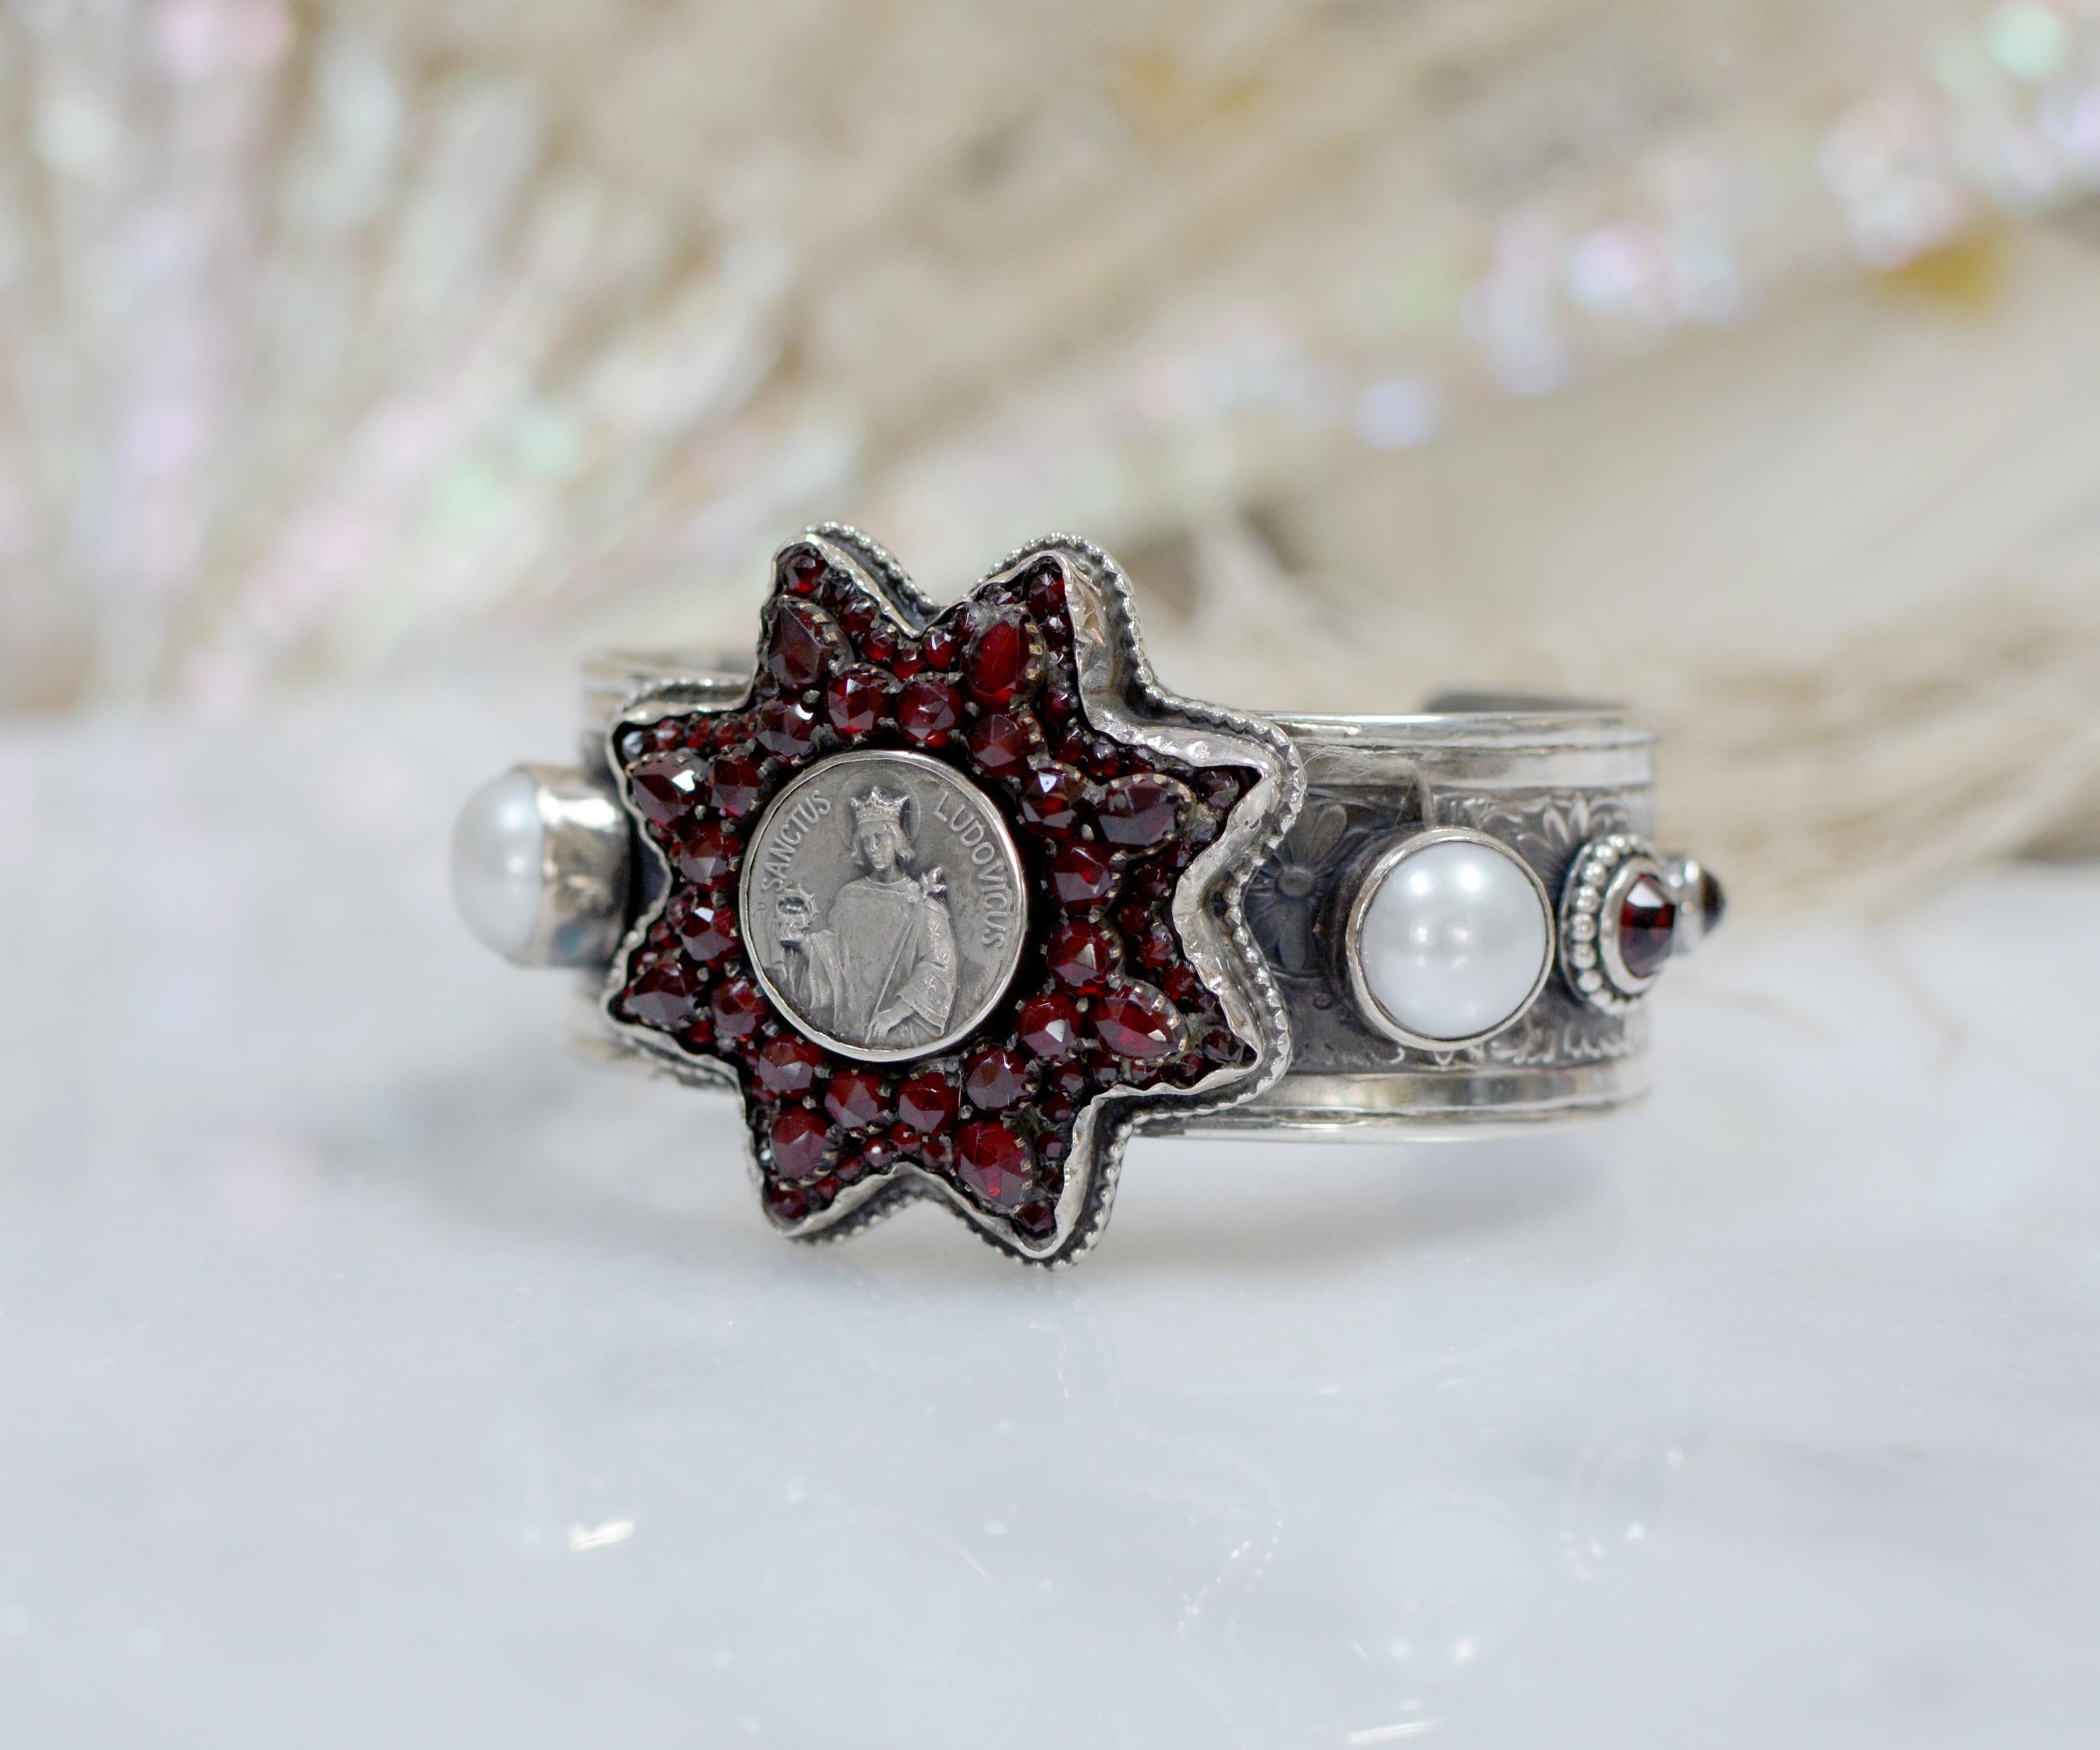 Ce trésor de bracelet de la créatrice Jill Garber présente une exquise étoile victorienne ancienne comportant environ 88 grenats de Bohême taillés en rose et sertis à la pointe. L'étoile à huit branches entoure magnifiquement une médaille religieuse